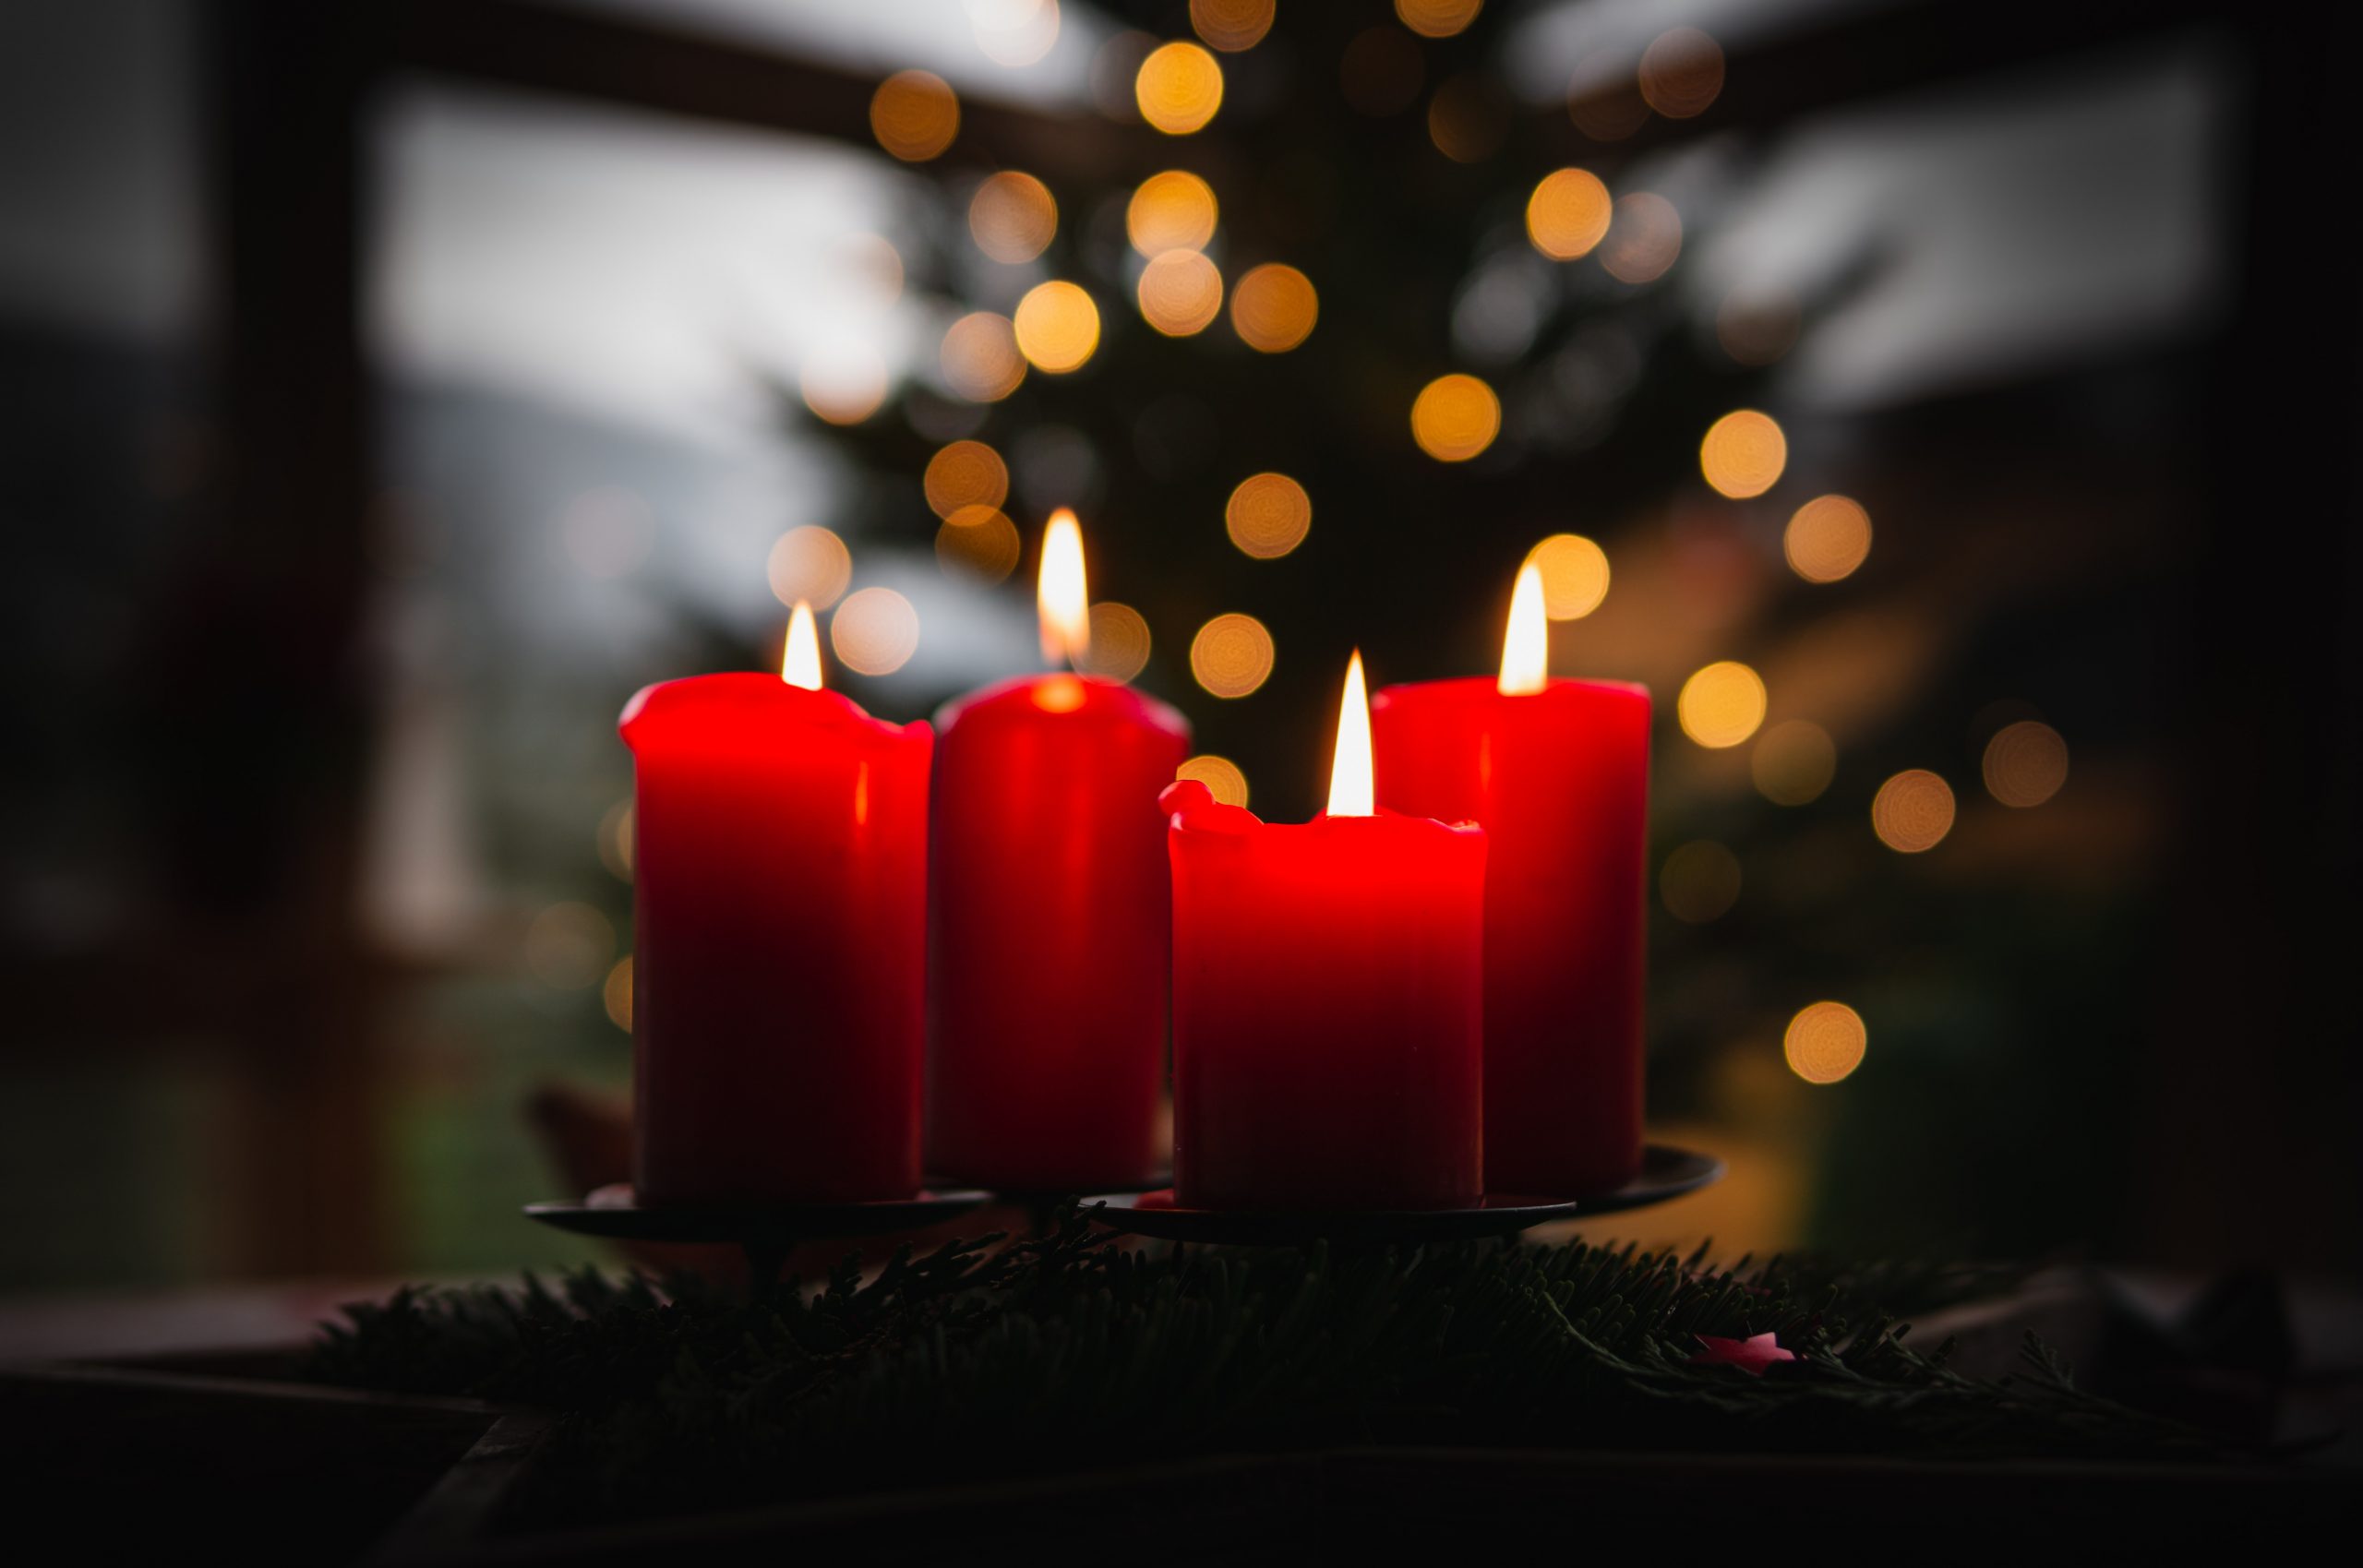 Cuatro velas rojas de Adviento están encendidas, mientras que un árbol de Navidad y luces borrosas están en el fondo.